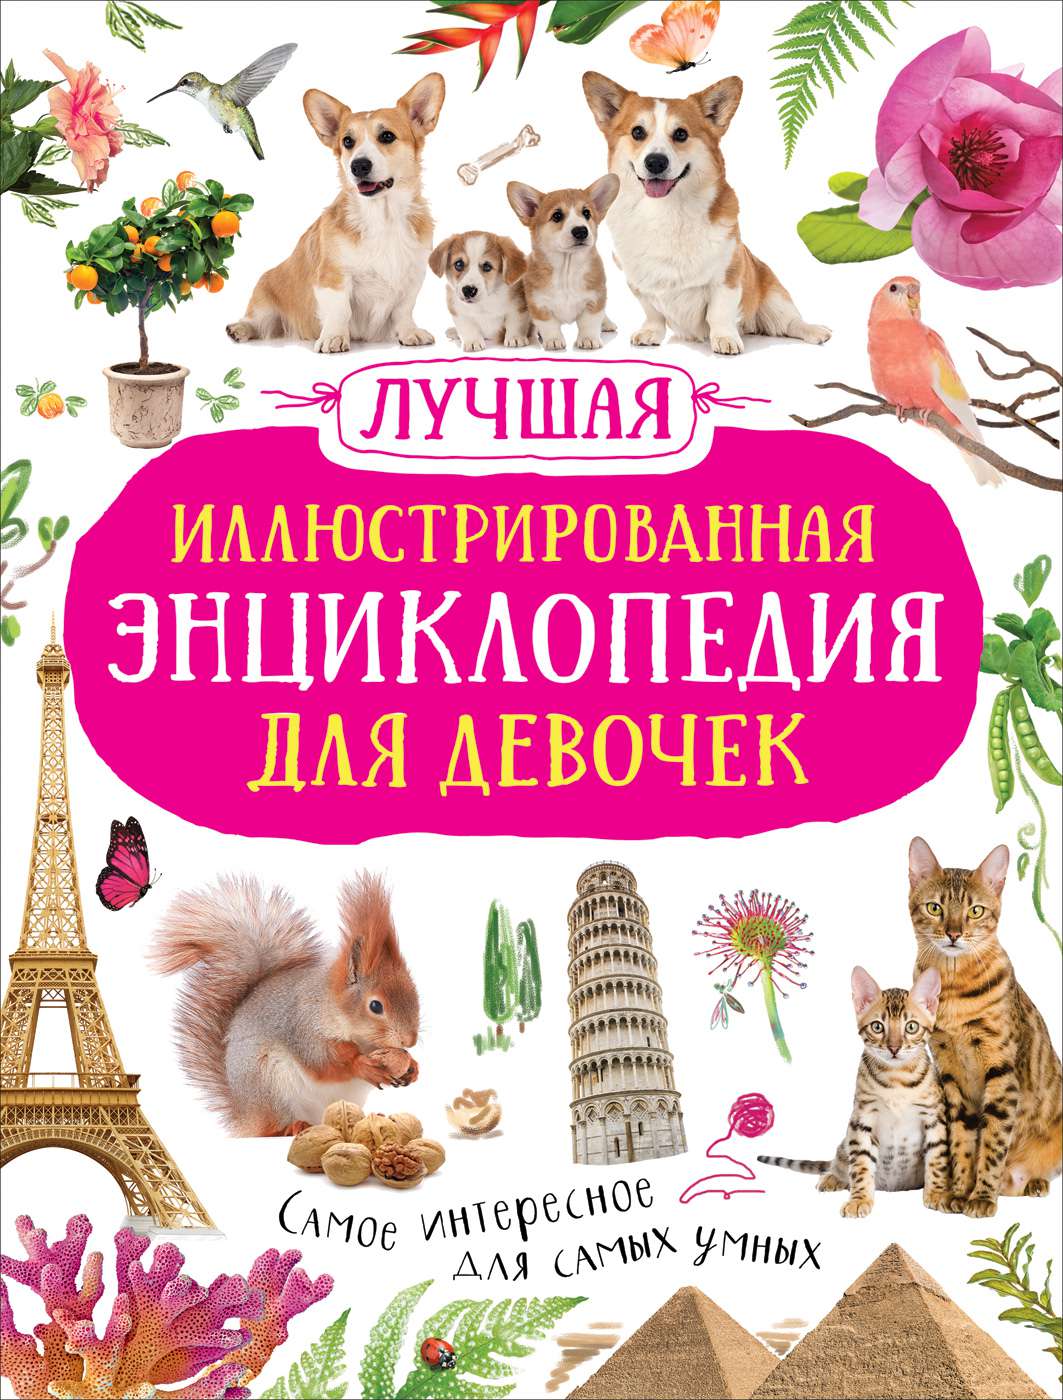 Книга 39081 Лучшая Энциклопедия для девочек Росмэн - Санкт-Петербург 